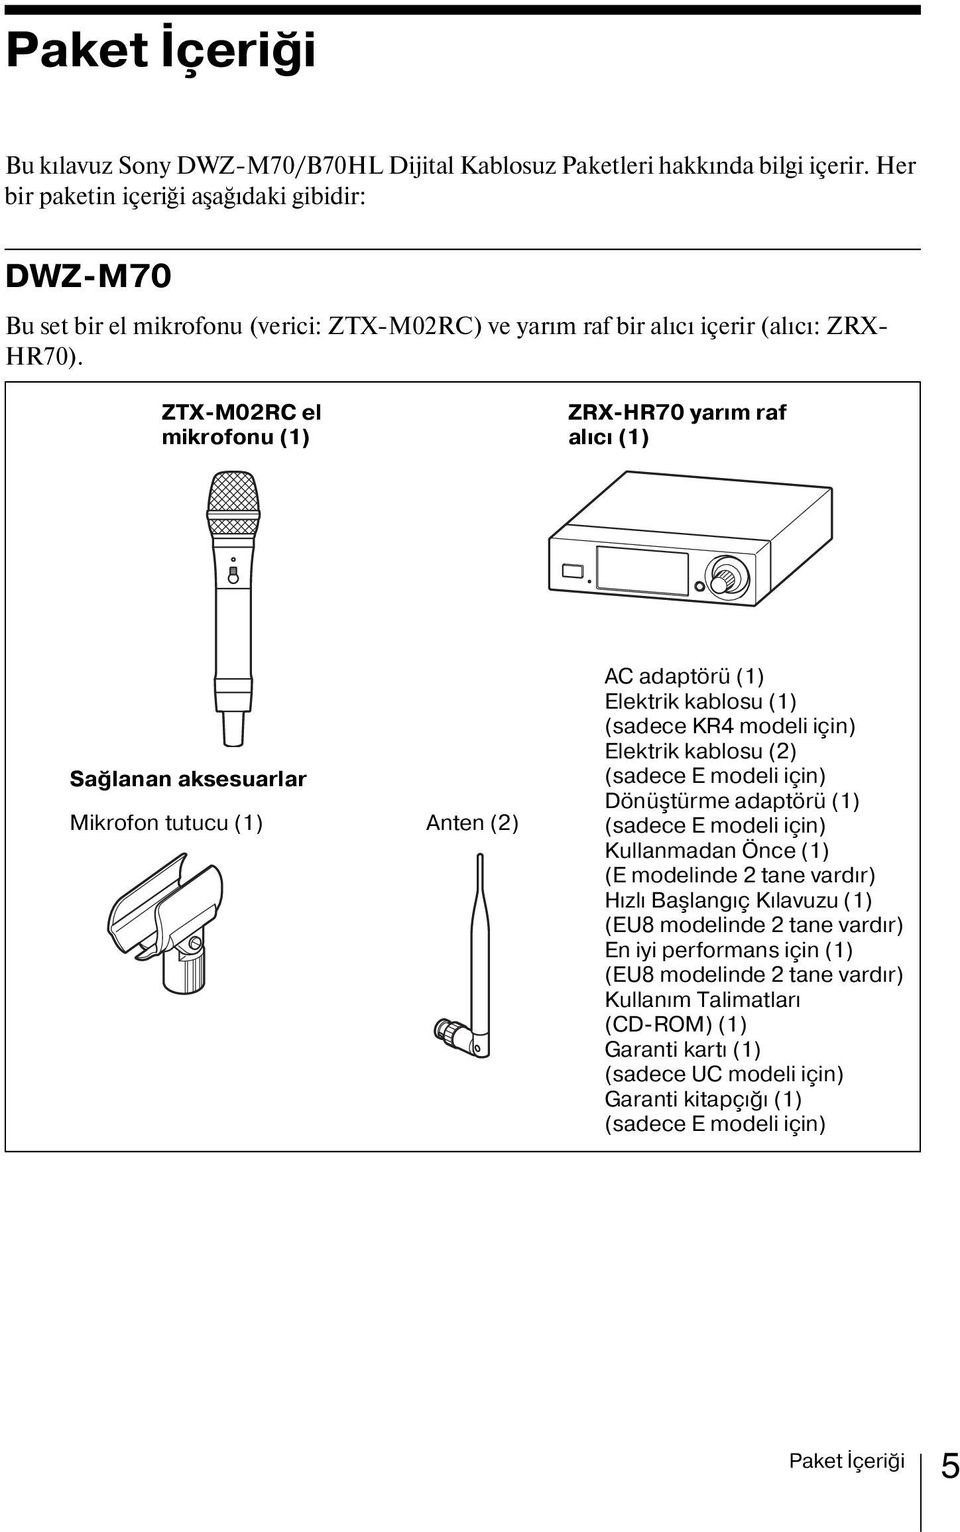 ZTX-M02RC el mikrofonu (1) ZRX-HR70 yarım raf alıcı (1) Sağlanan aksesuarlar Mikrofon tutucu (1) Anten (2) AC adaptörü (1) Elektrik kablosu (1) (sadece KR4 modeli için) Elektrik kablosu (2) (sadece E